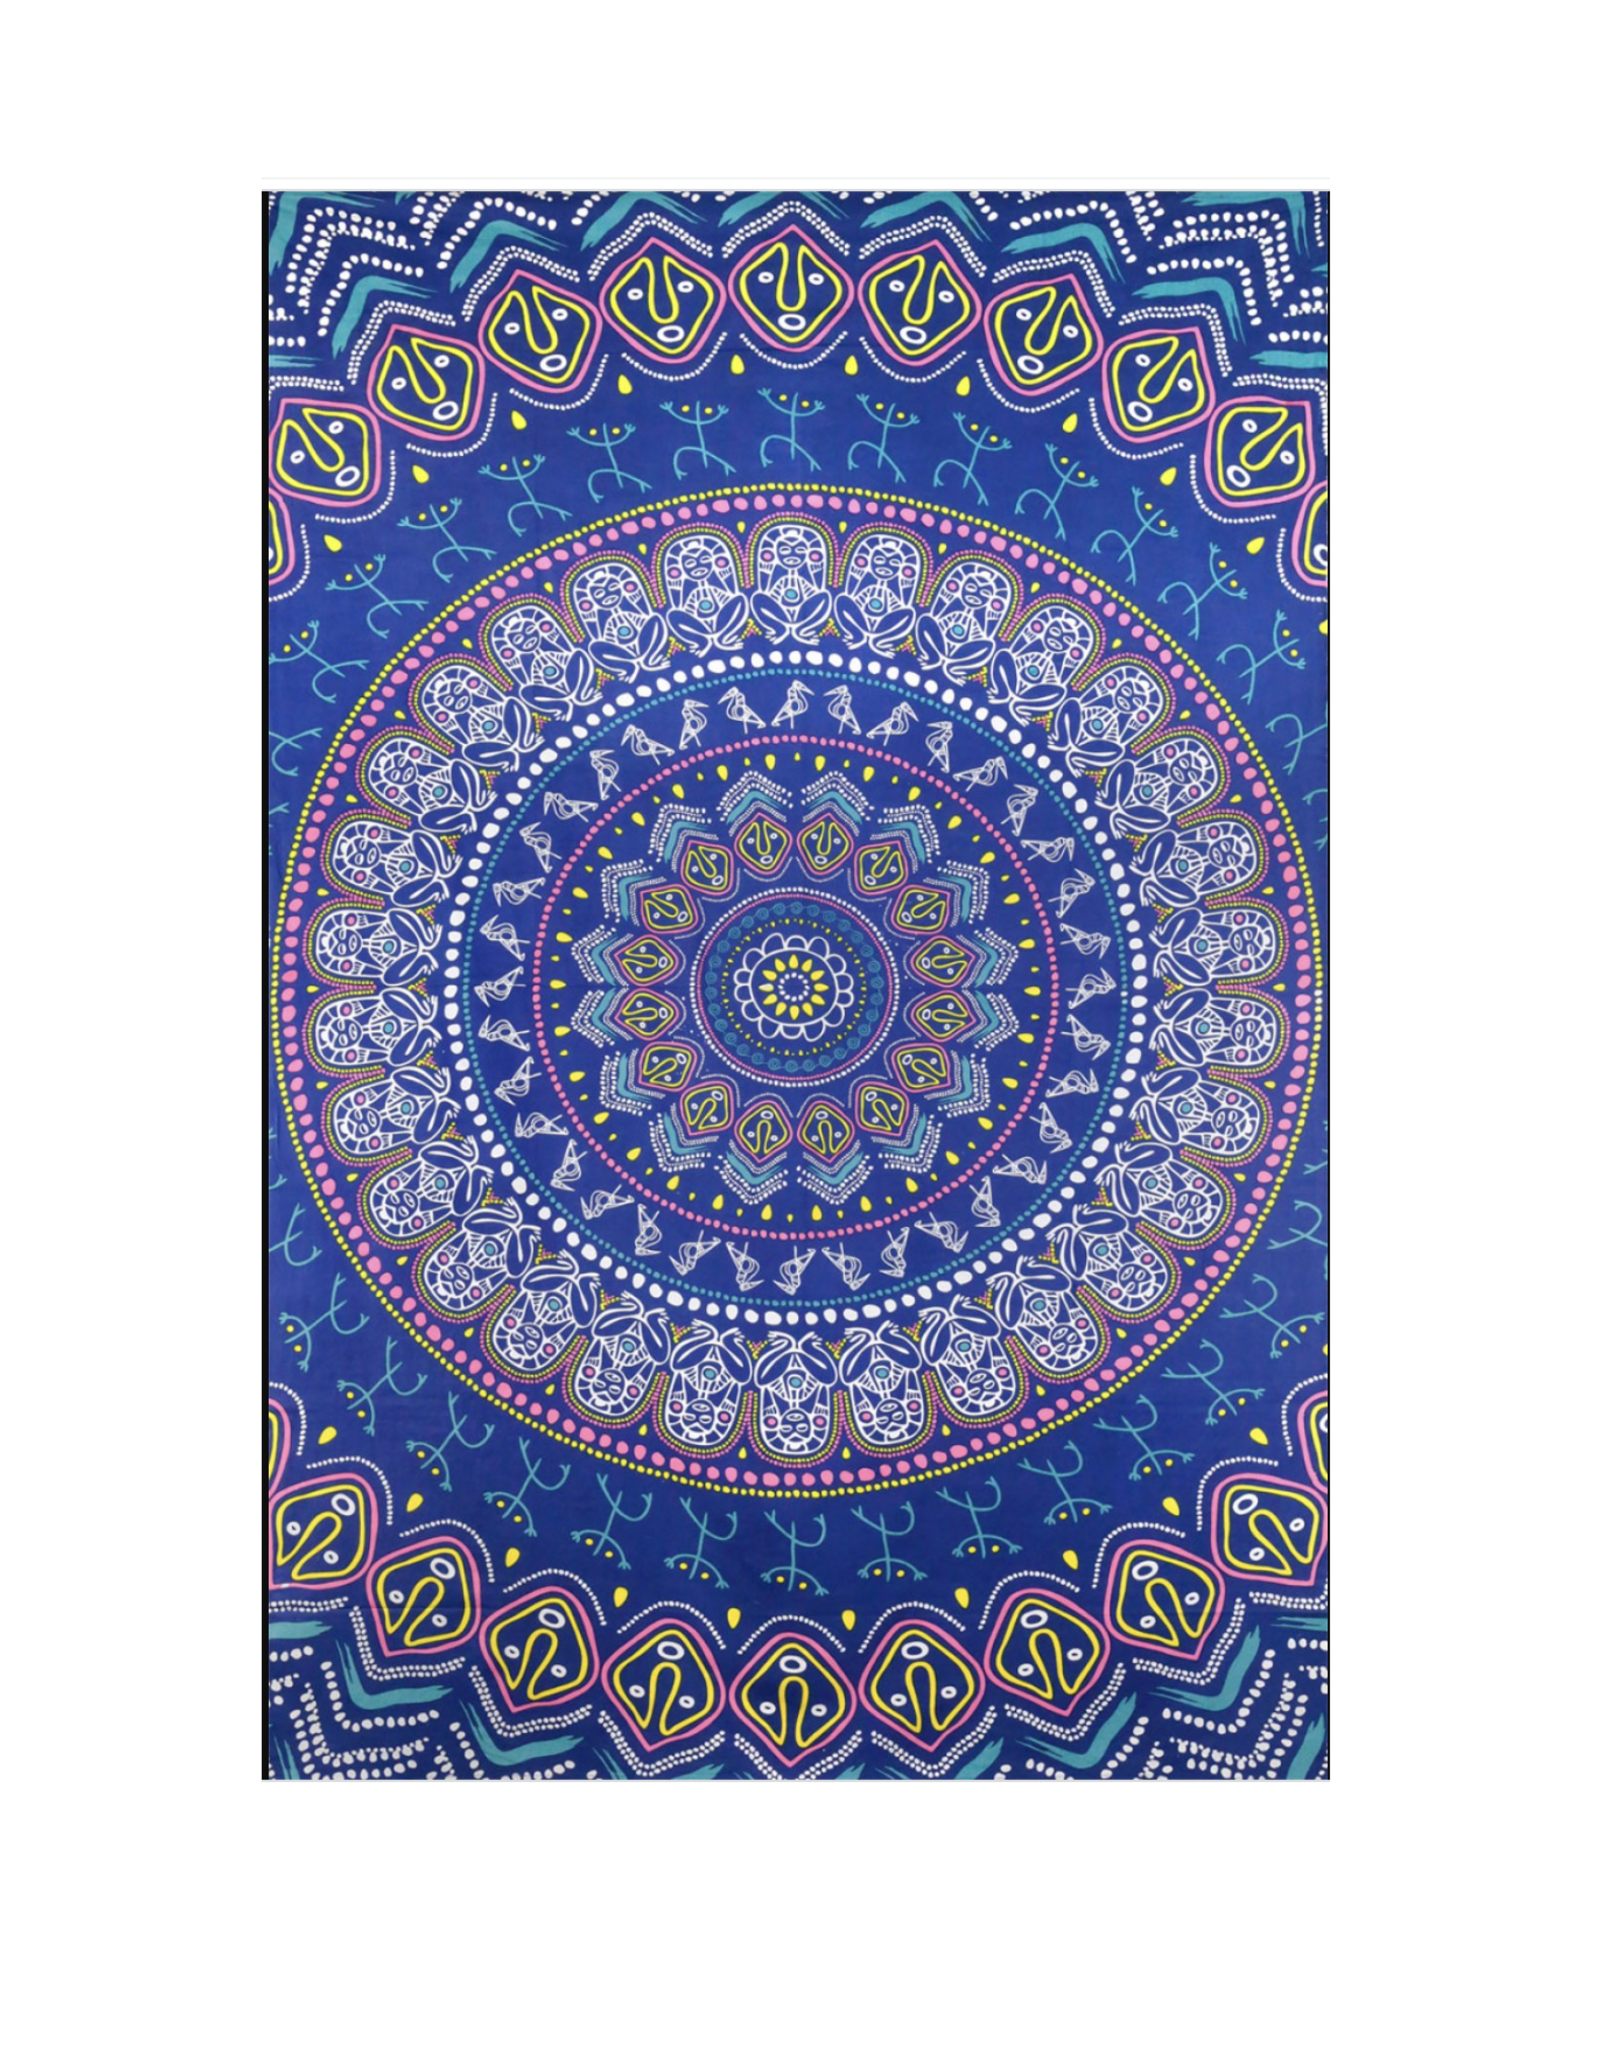 Taino Mandala Tapestry 60"x90" - Art by Dina June Toomey